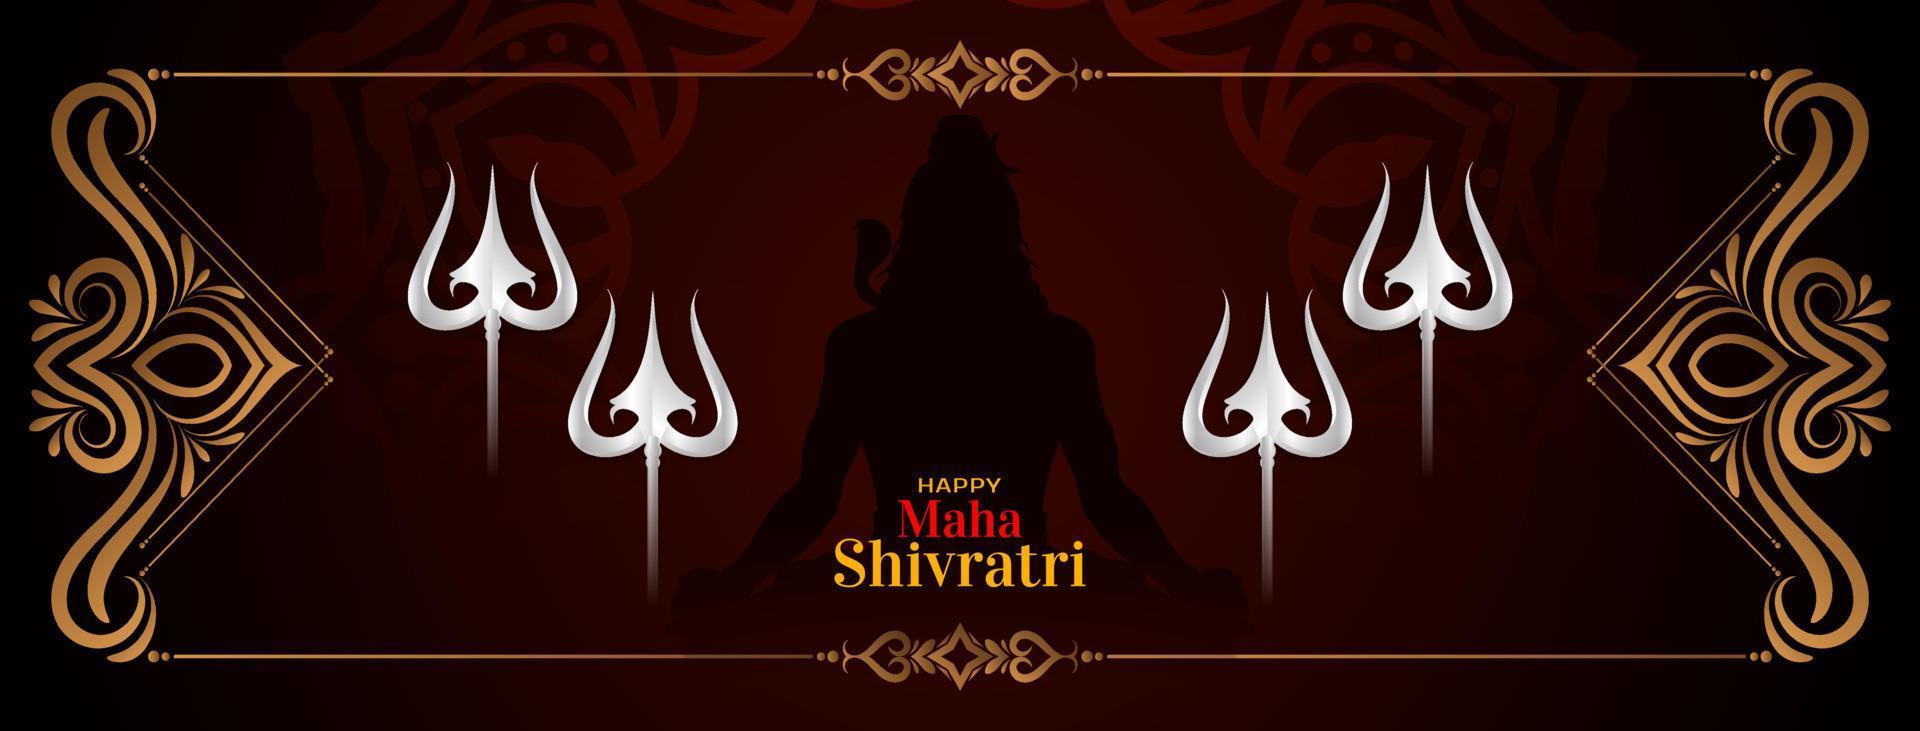 glücklich maha Shivratri kulturell Herr Shiva Anbetung Festival Banner vektor